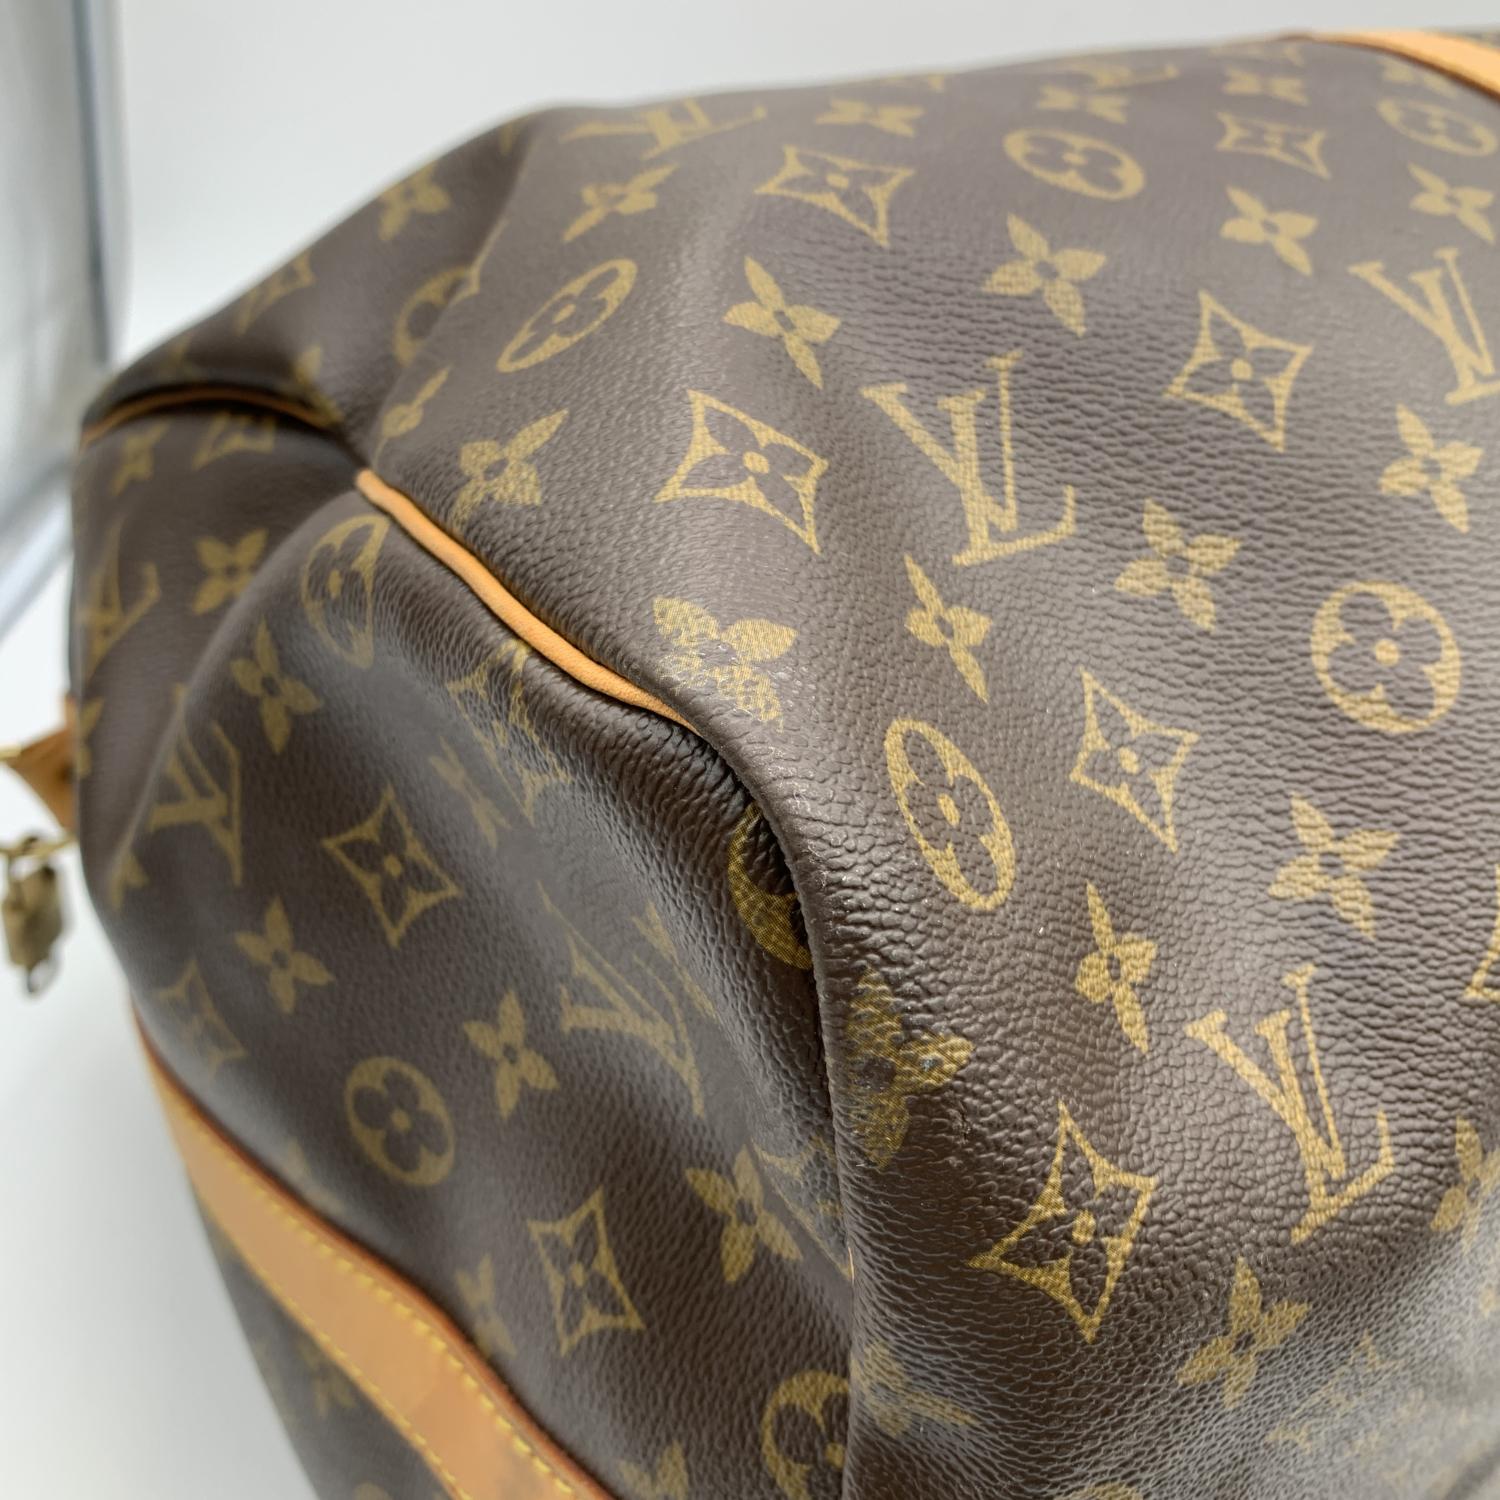 Louis Vuitton Monogram Keepall 60 Travel Large Duffle Bag M41412 5